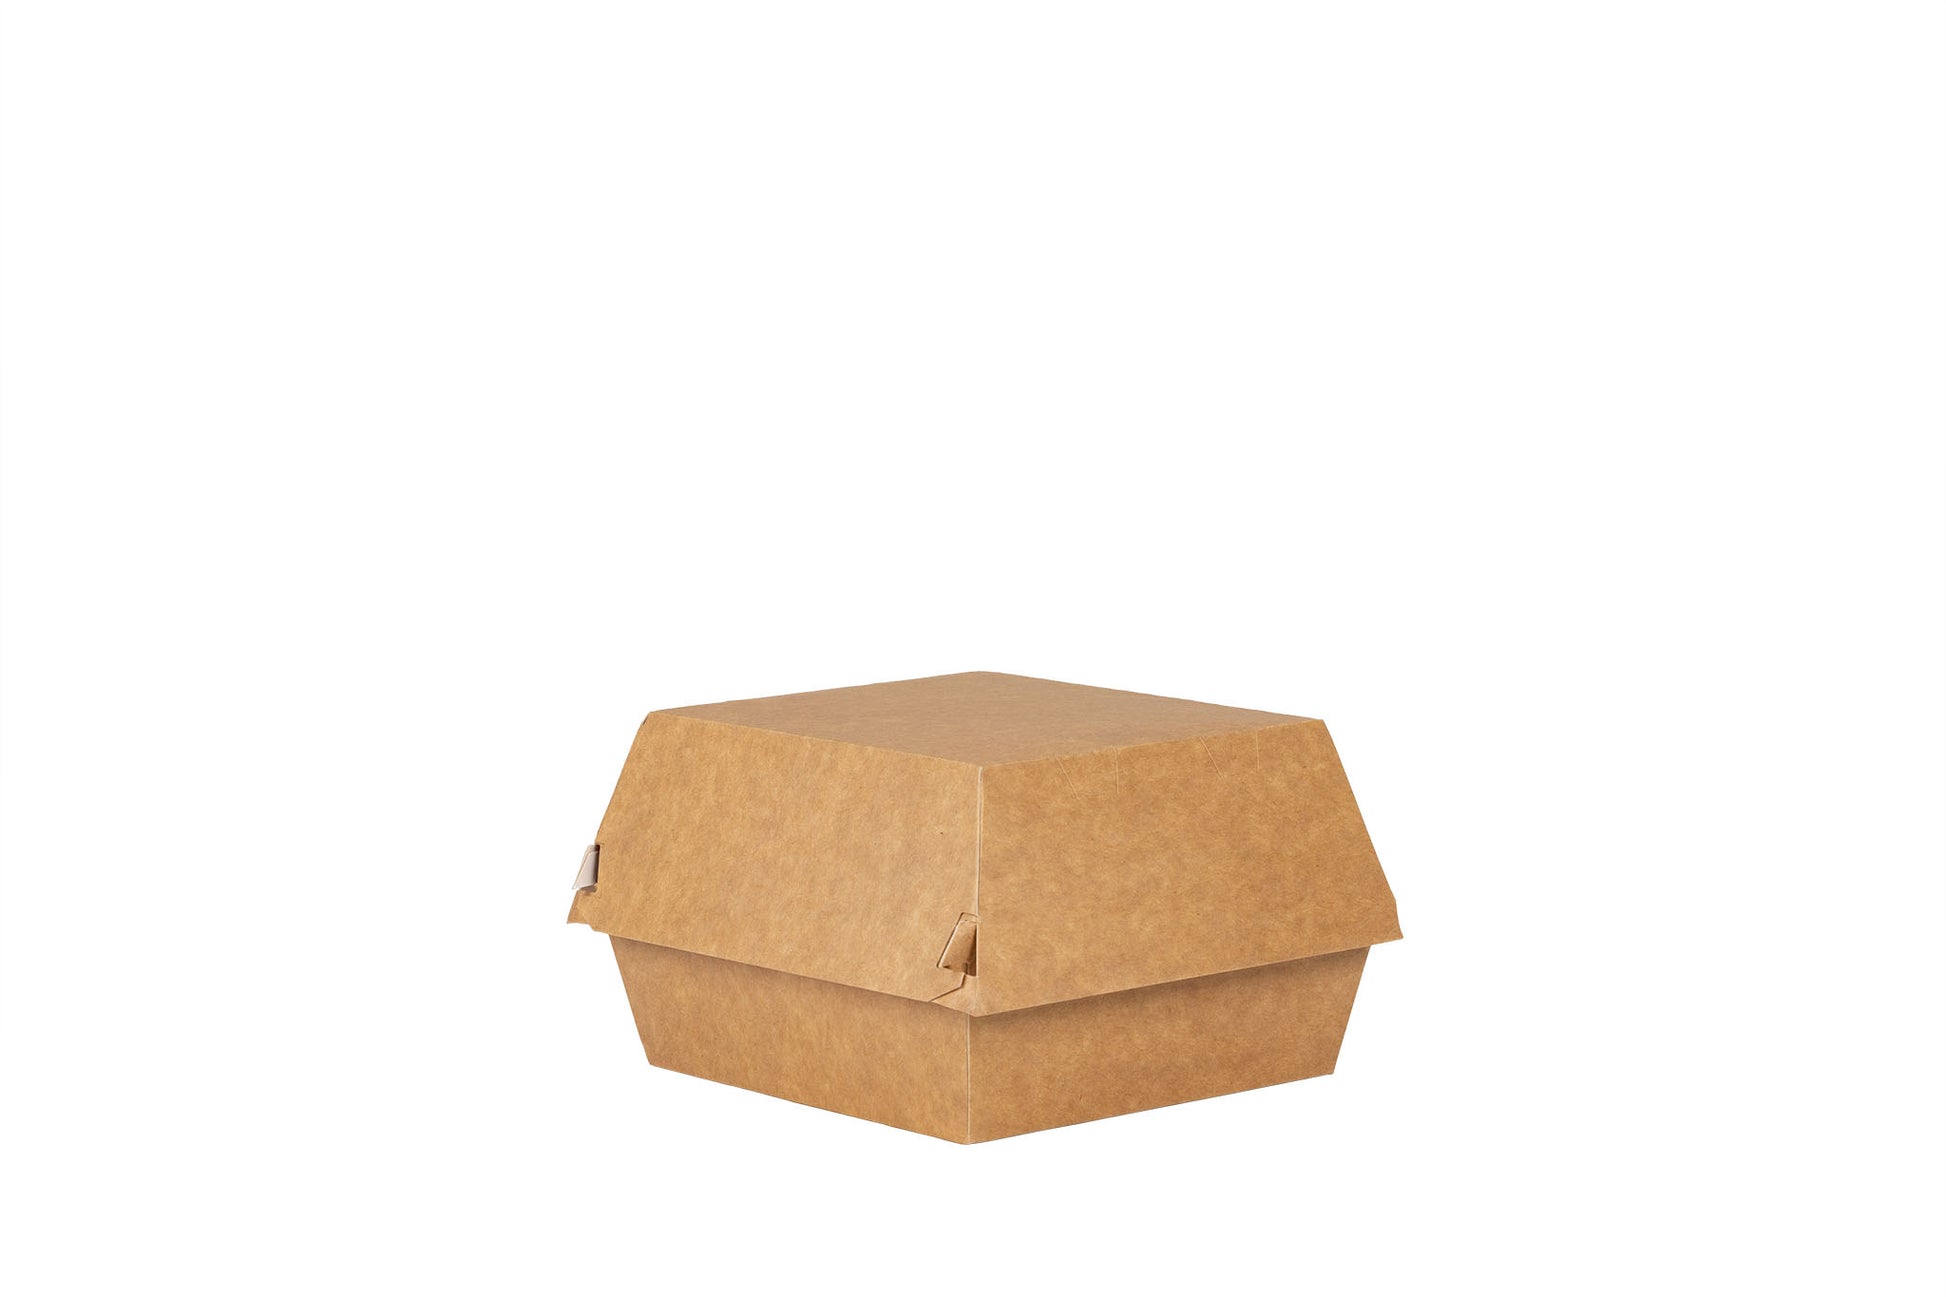 Das Bild zeigt die geschlossene Hamburger Box vertrieben von der Malik Verpackungen GmbH Hanau. Die Hamburger-Box ist aus Pappe. Die Farbe der Burger Box ist braun. Das Bild ist schrag von der Seite aufgenommen. Fotograf: Detlev Steinhilber (detis.pix)